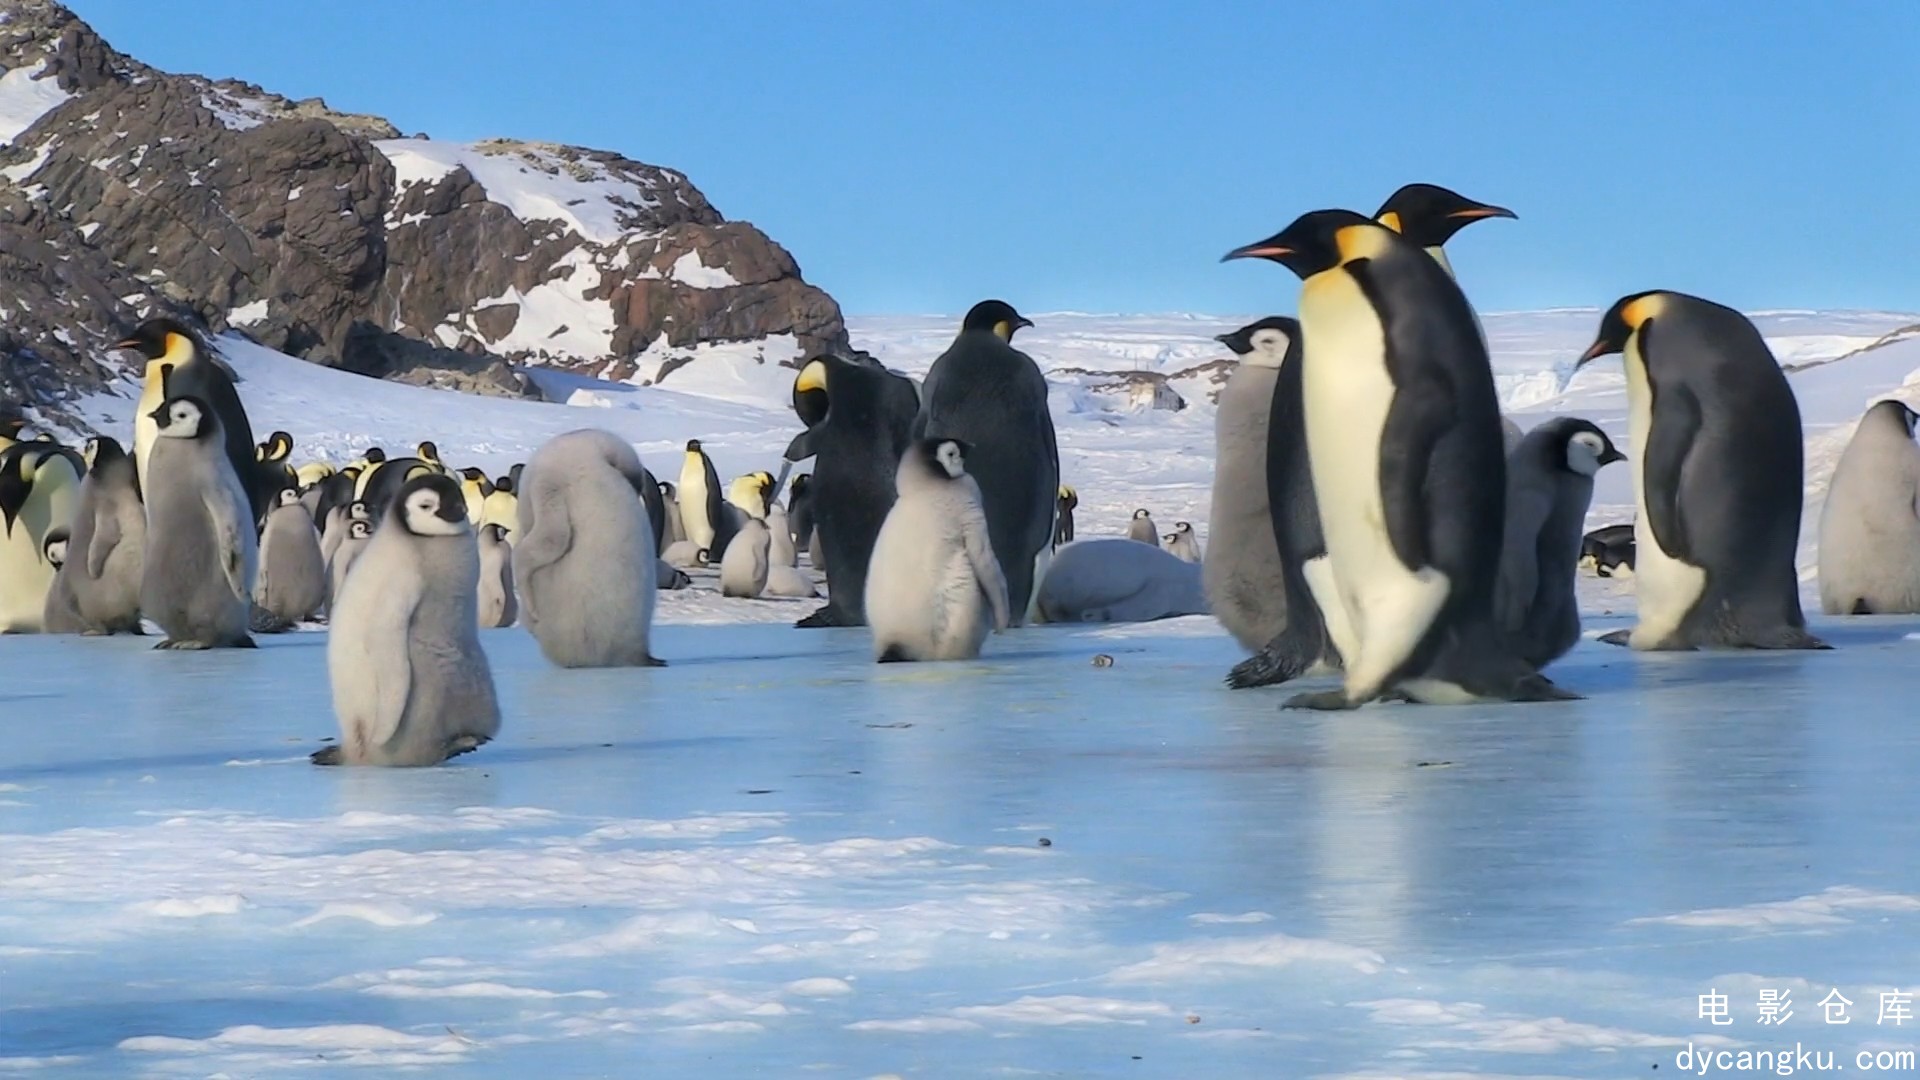 [电影仓库dycangku.com]BBC.Snow.Chick.A.Penguins.Tale.1080p.HDTV.x264.AAC.mkv_sna.jpg